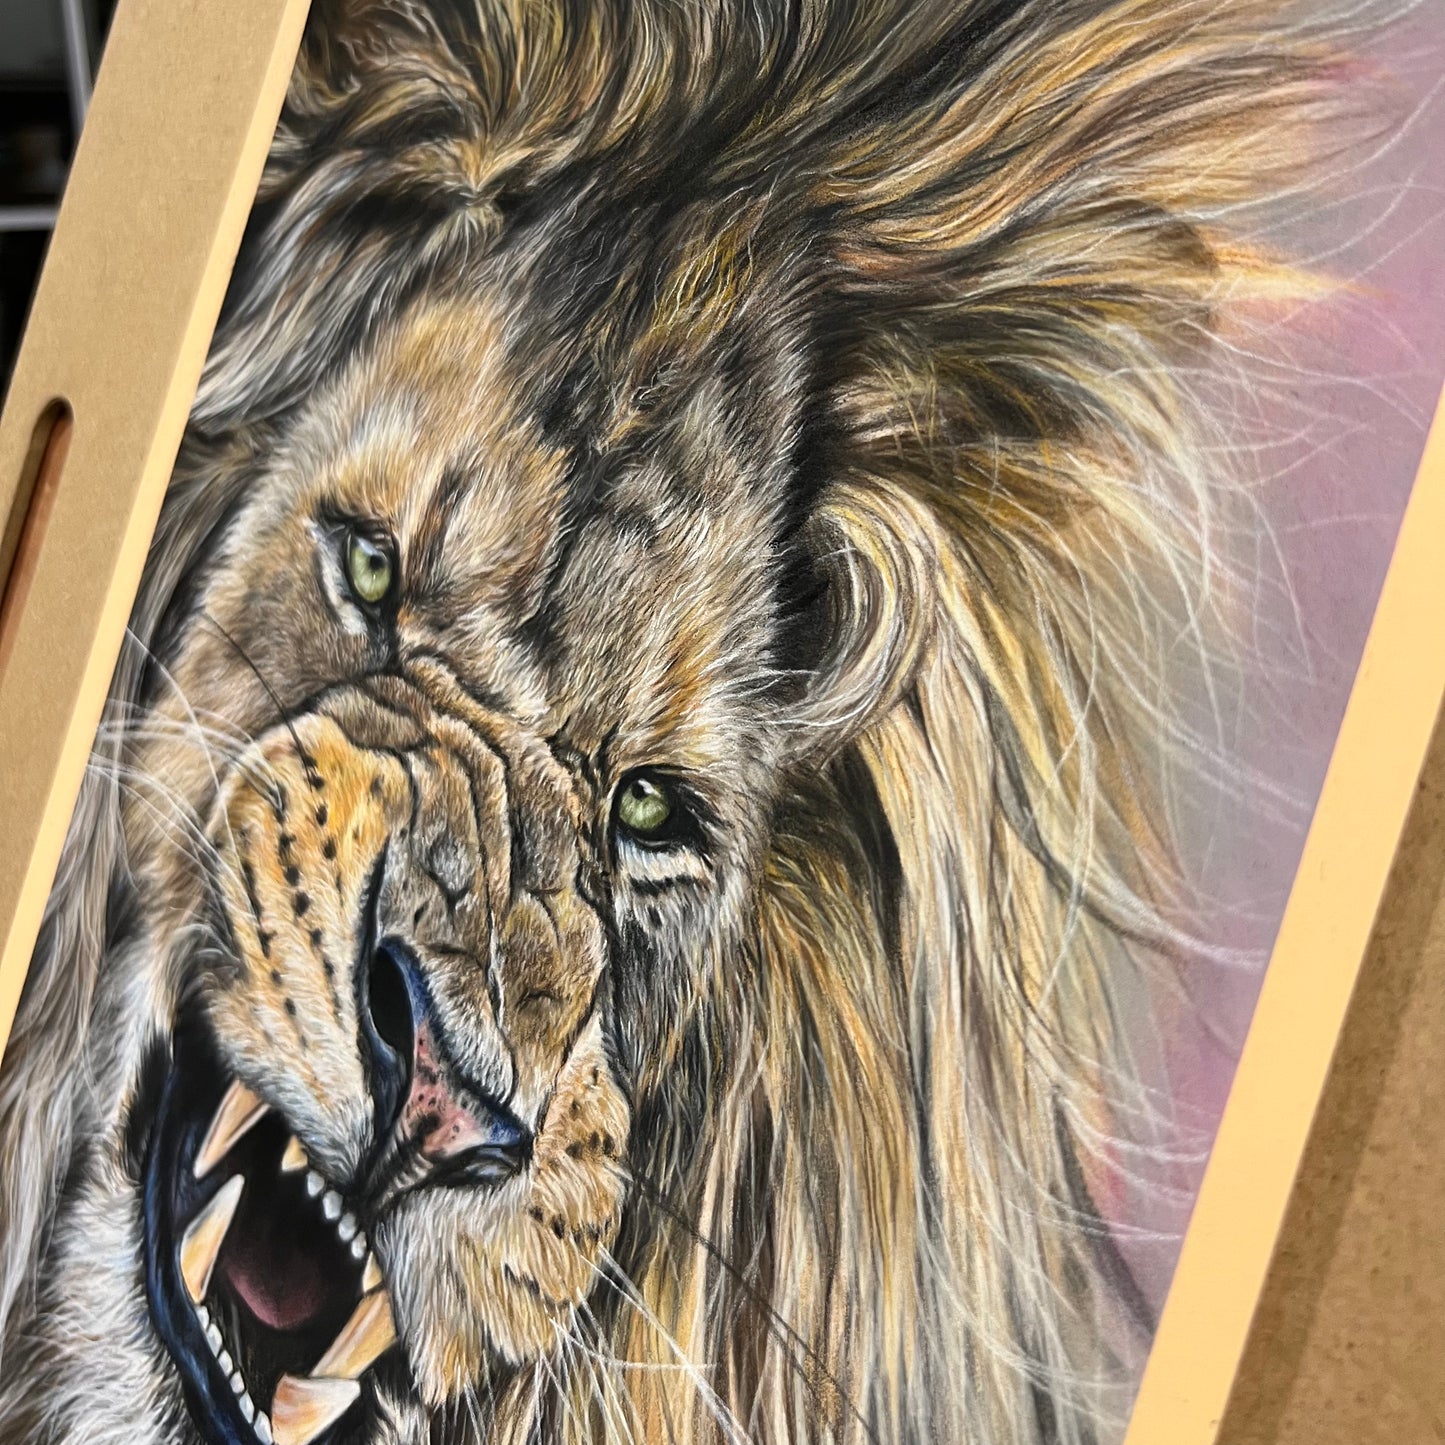 Roaring Lion Portrait in Pastels